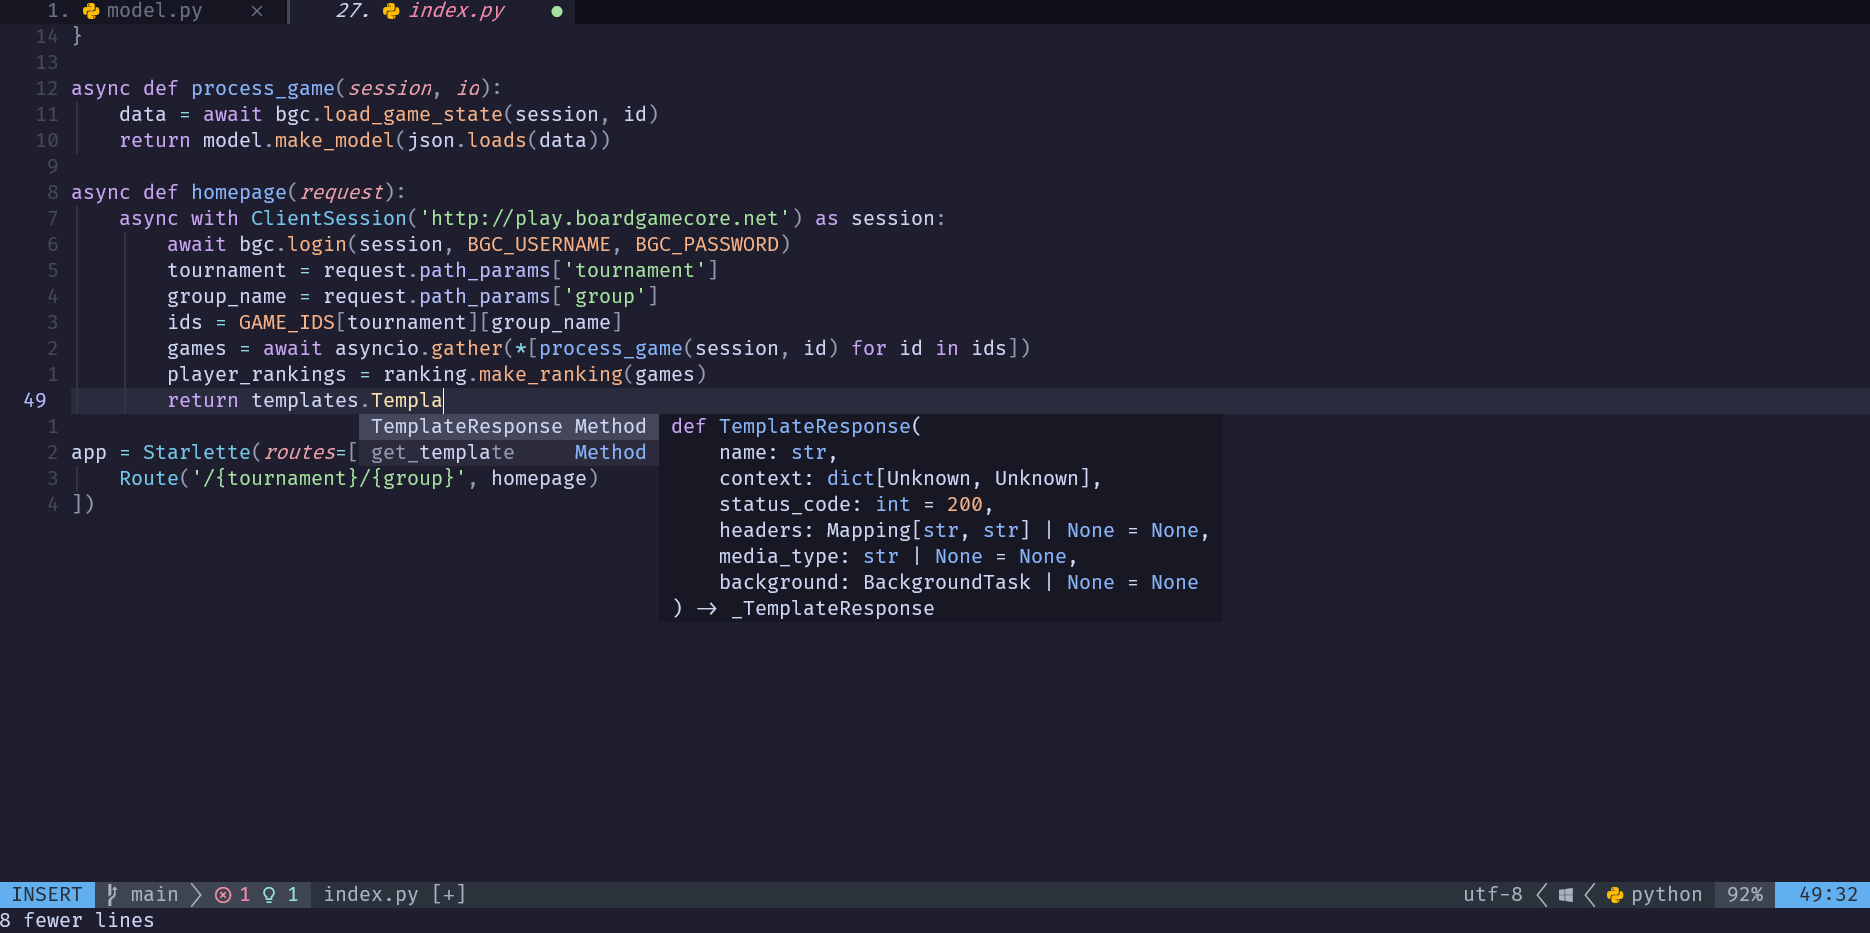 Configuring NeoVim as a Python IDE